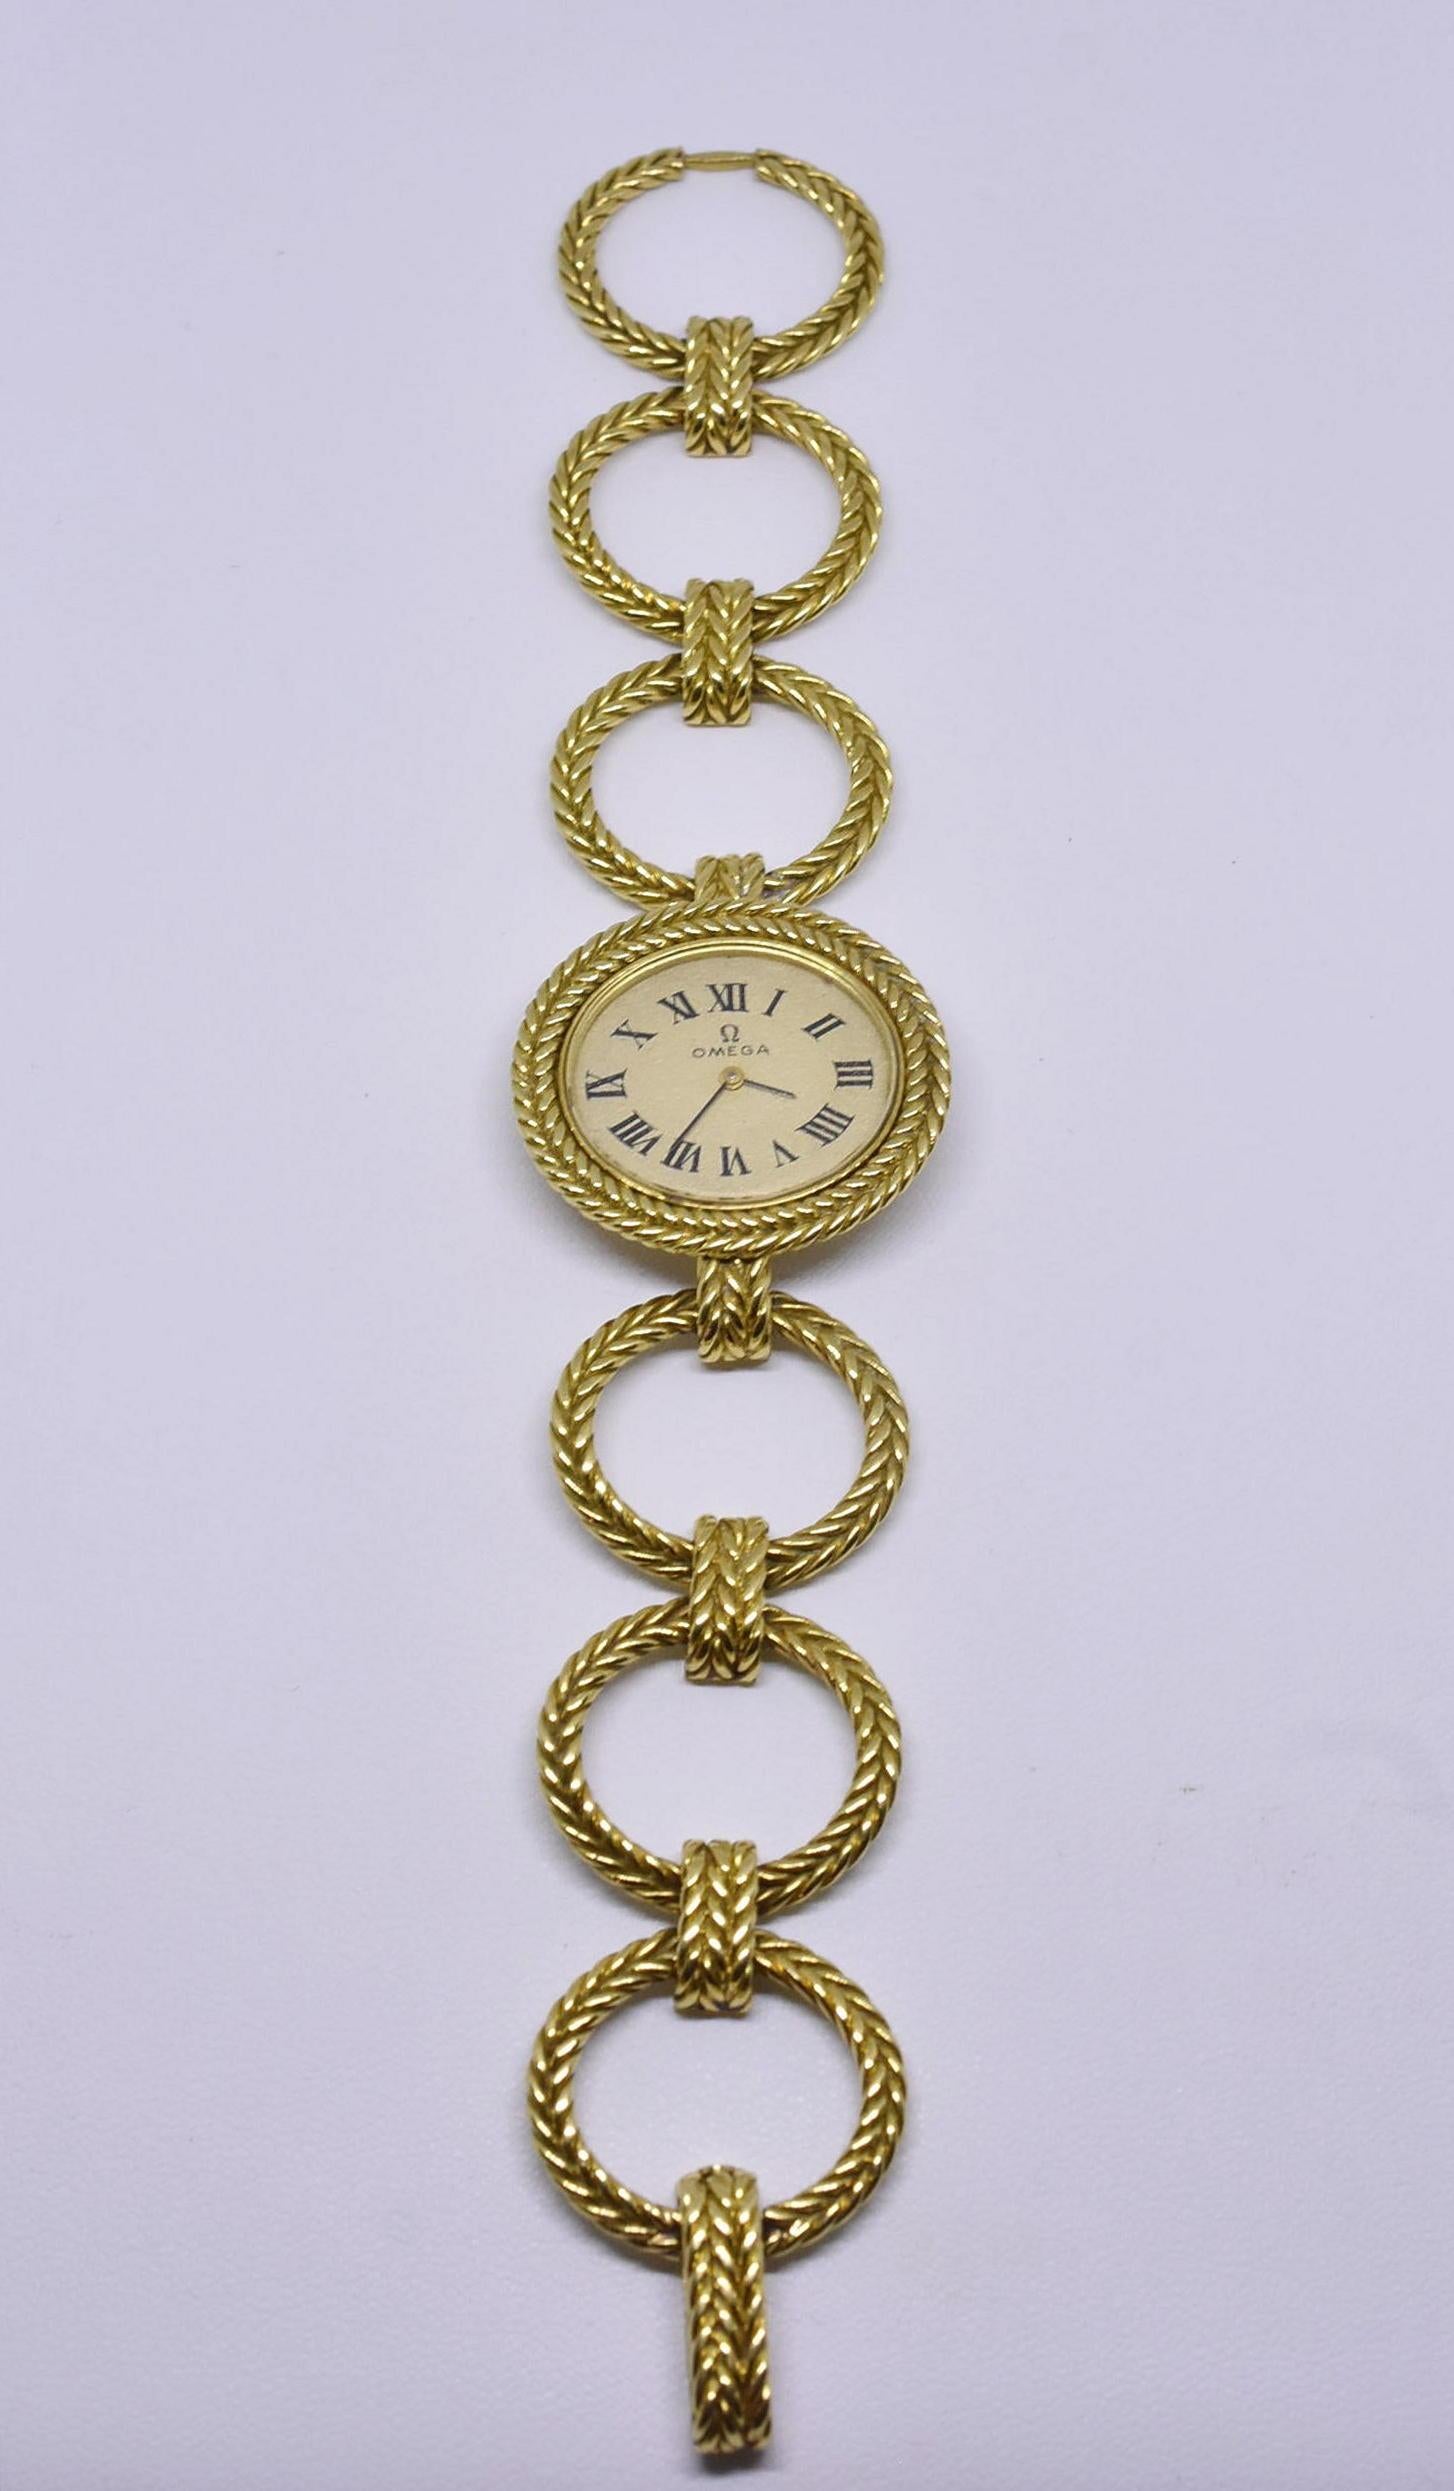 Magnifique montre Omega pour femme en or à remontage 18 carats. Il s'agit d'une montre inhabituelle avec des maillons ovales tressés en or formant un bracelet. Le cadran est en excellent état, le cristal présente de légères rayures dues à l'âge et à